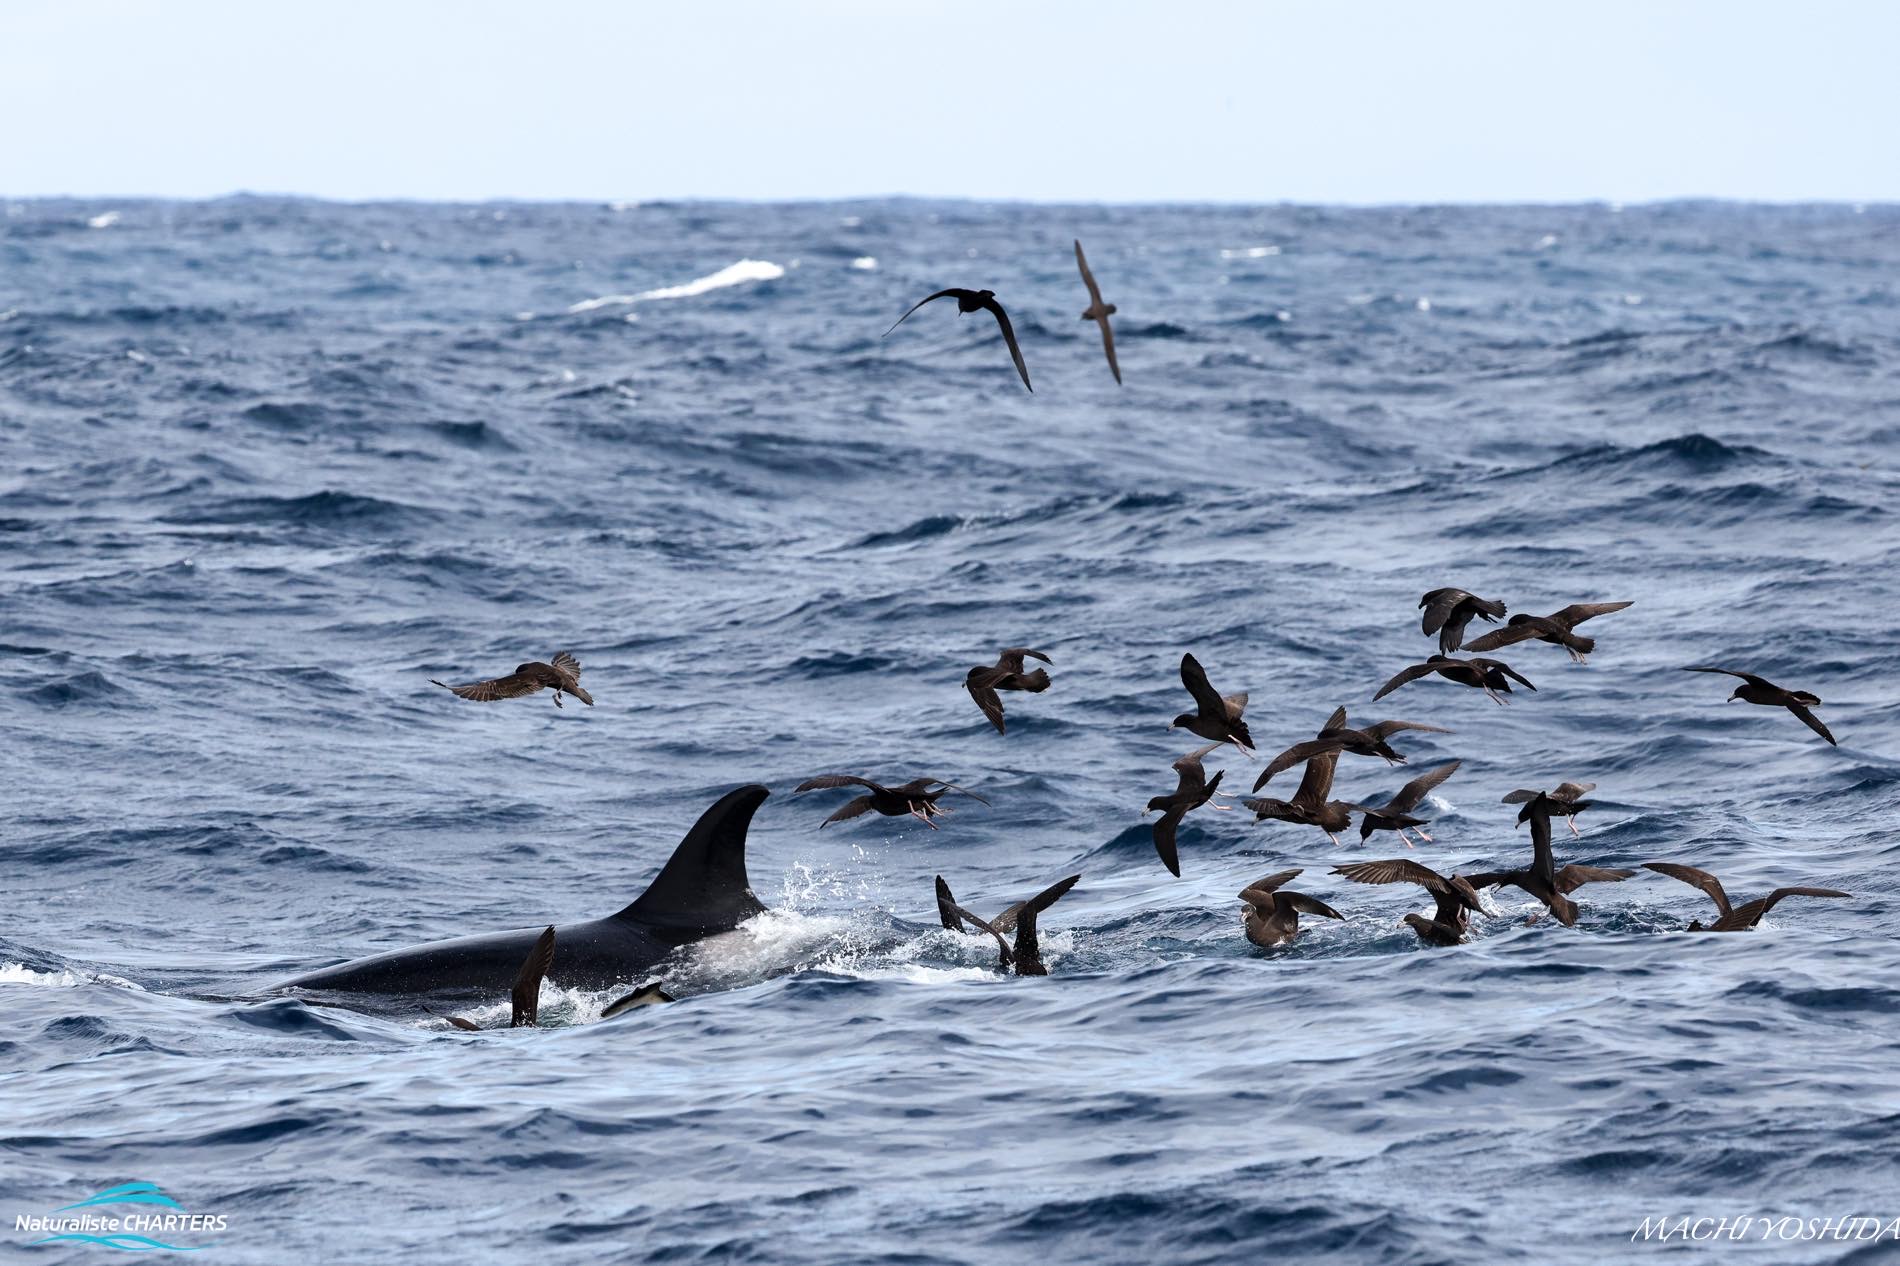 Successful predations feed a myriad of ocean dwellers